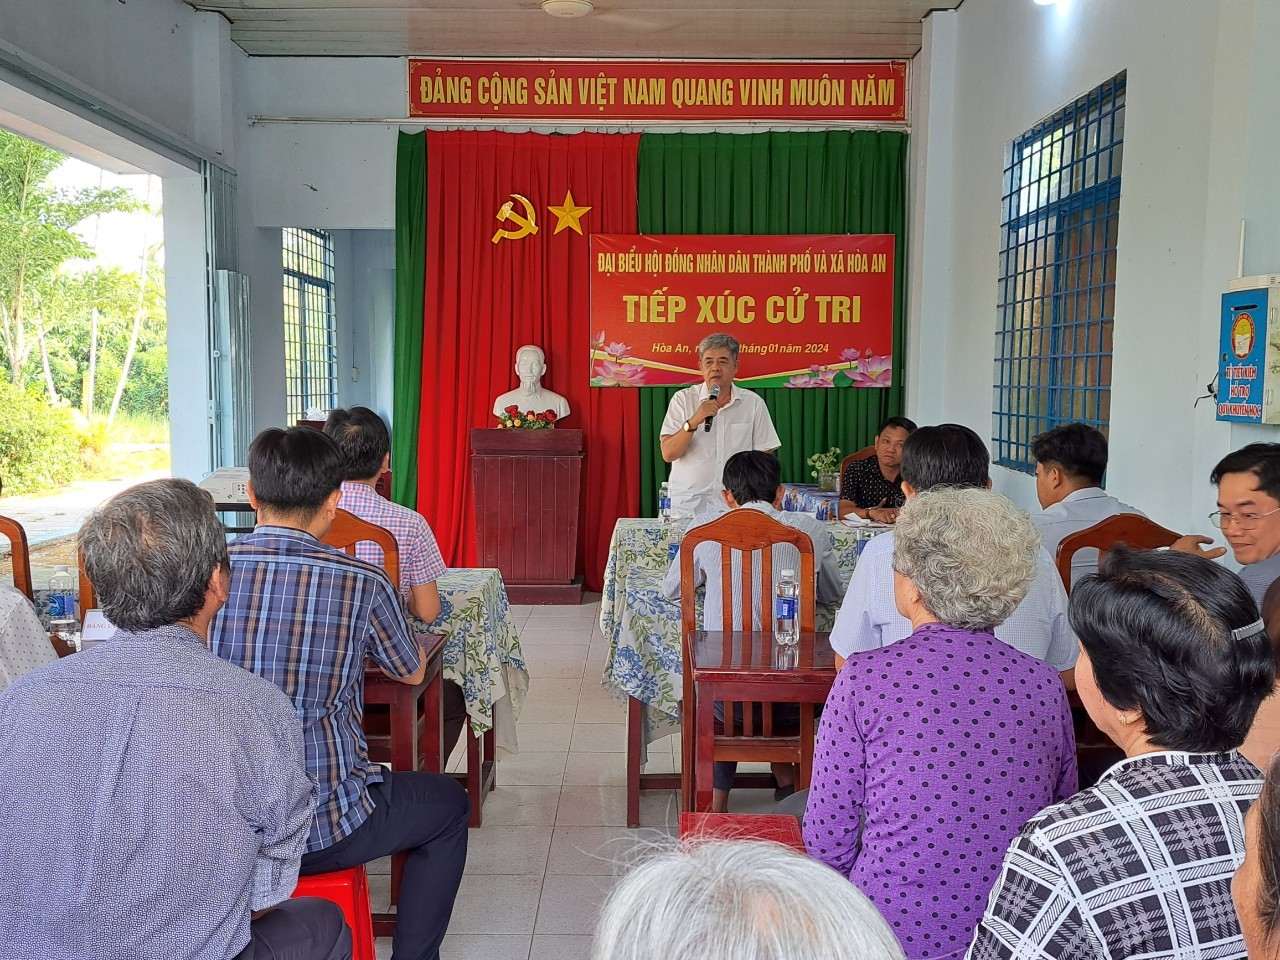 Đại biểu hội đồng nhân dân Thành phố tiếp xúc cử tri xã Hòa An  sau kỳ họp Hội đồng nhân dân lần thứ bảy